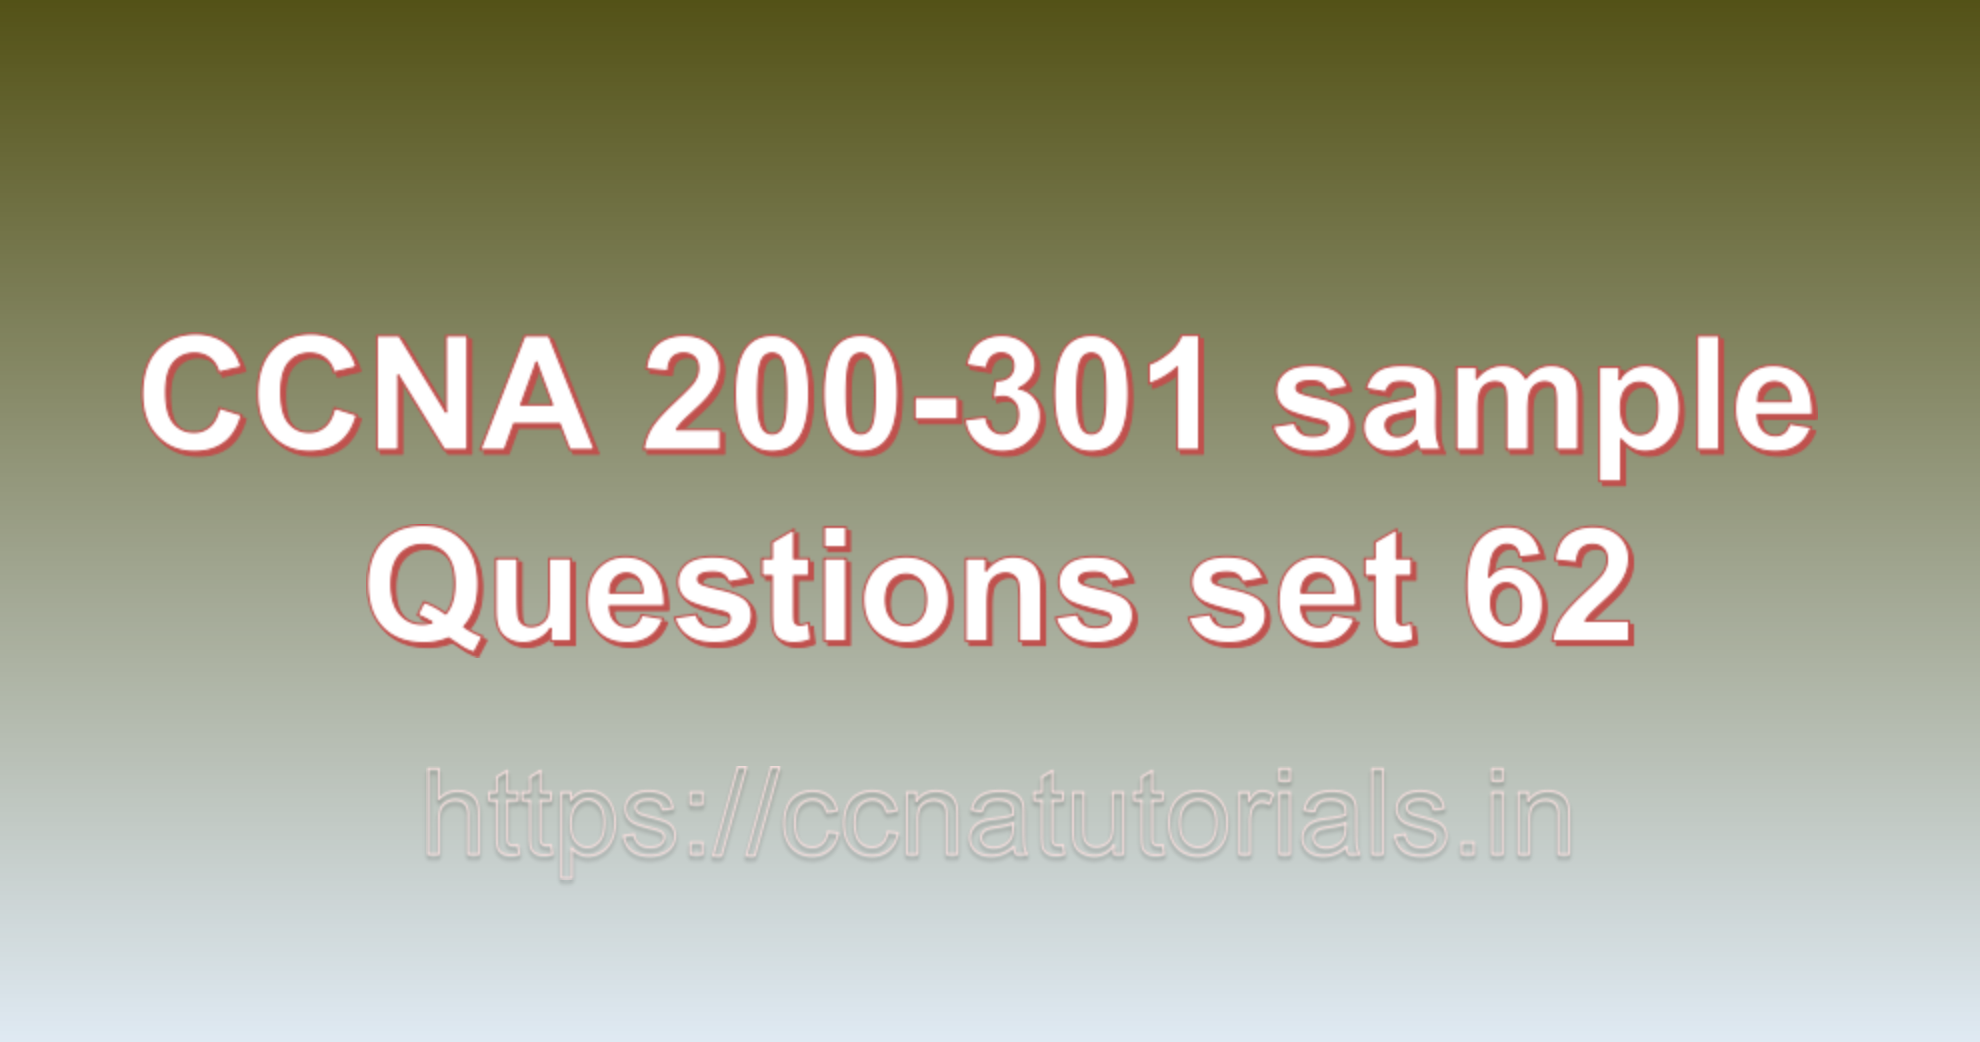 ccna sample questions set 62, ccna tutorials, CCNA Exam, ccna